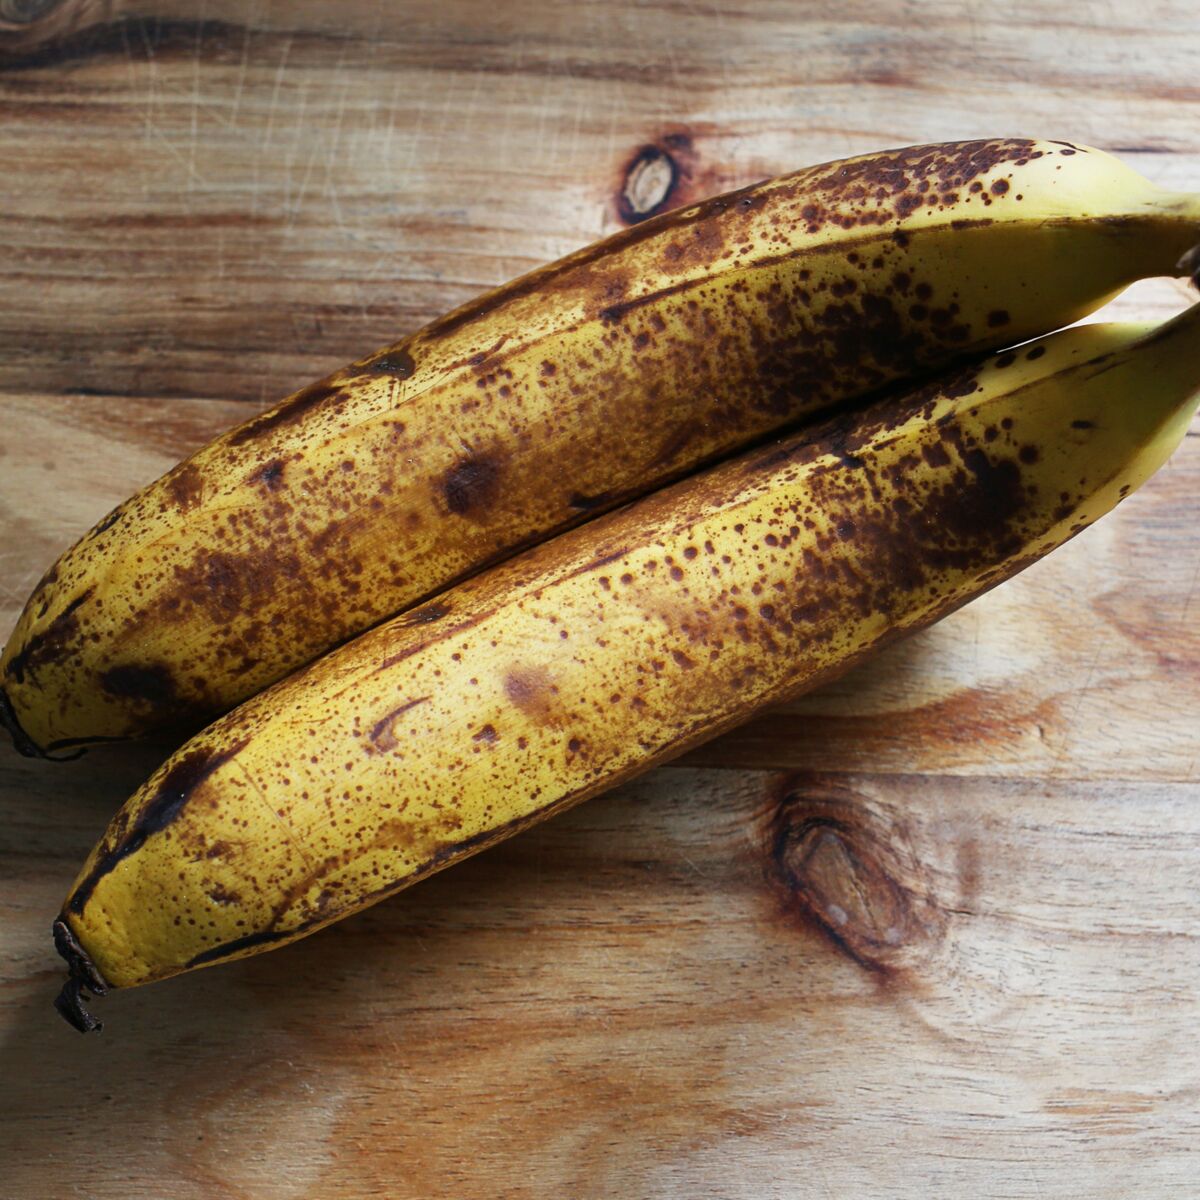 La bonne astuce pour conserver les bananes fraîches le plus